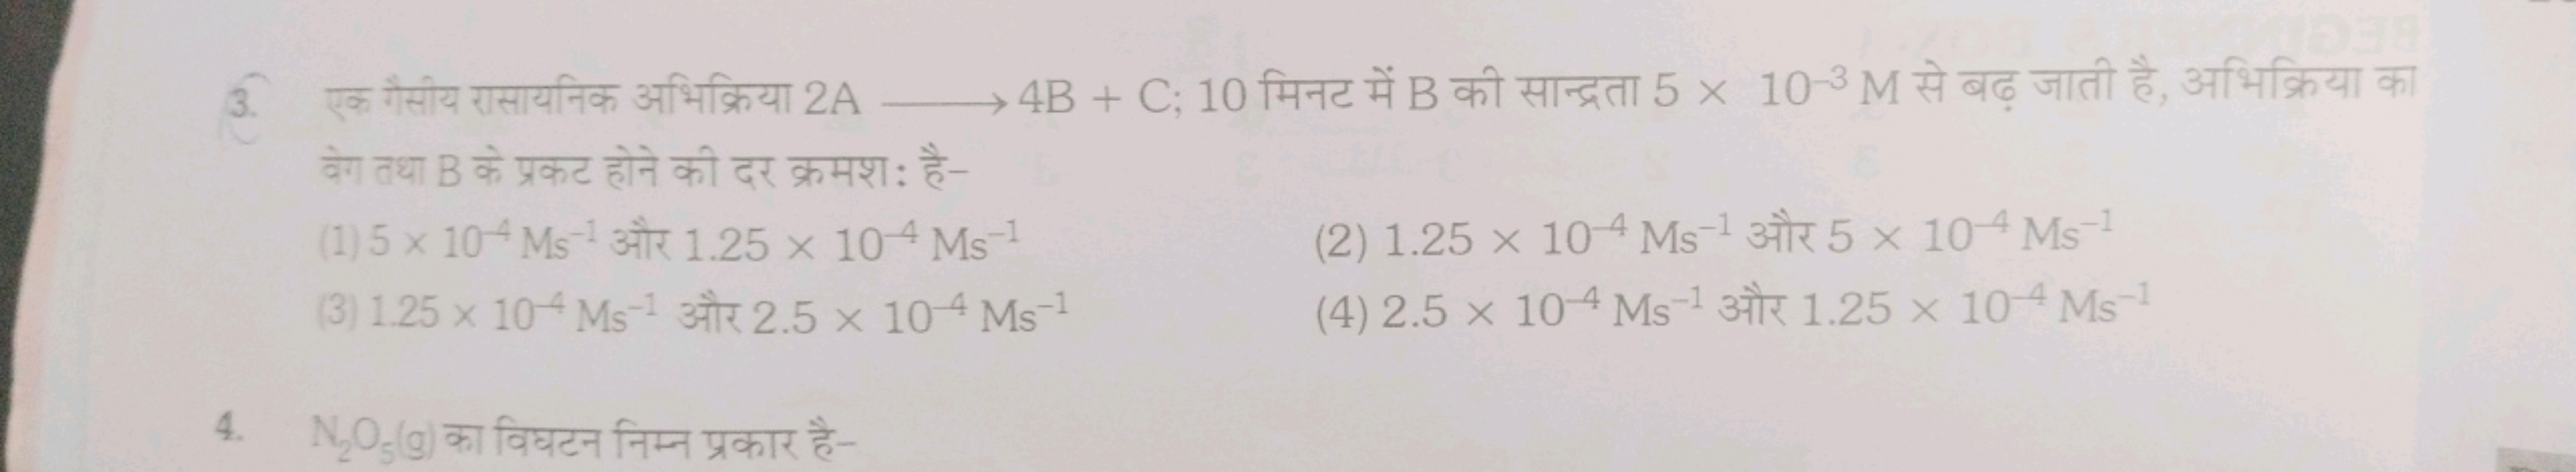 3. एक गैसीय रासायनिक अभिक्रिया 2 A⟶4 B+C; 10 मिनट में B की सान्द्रता 5